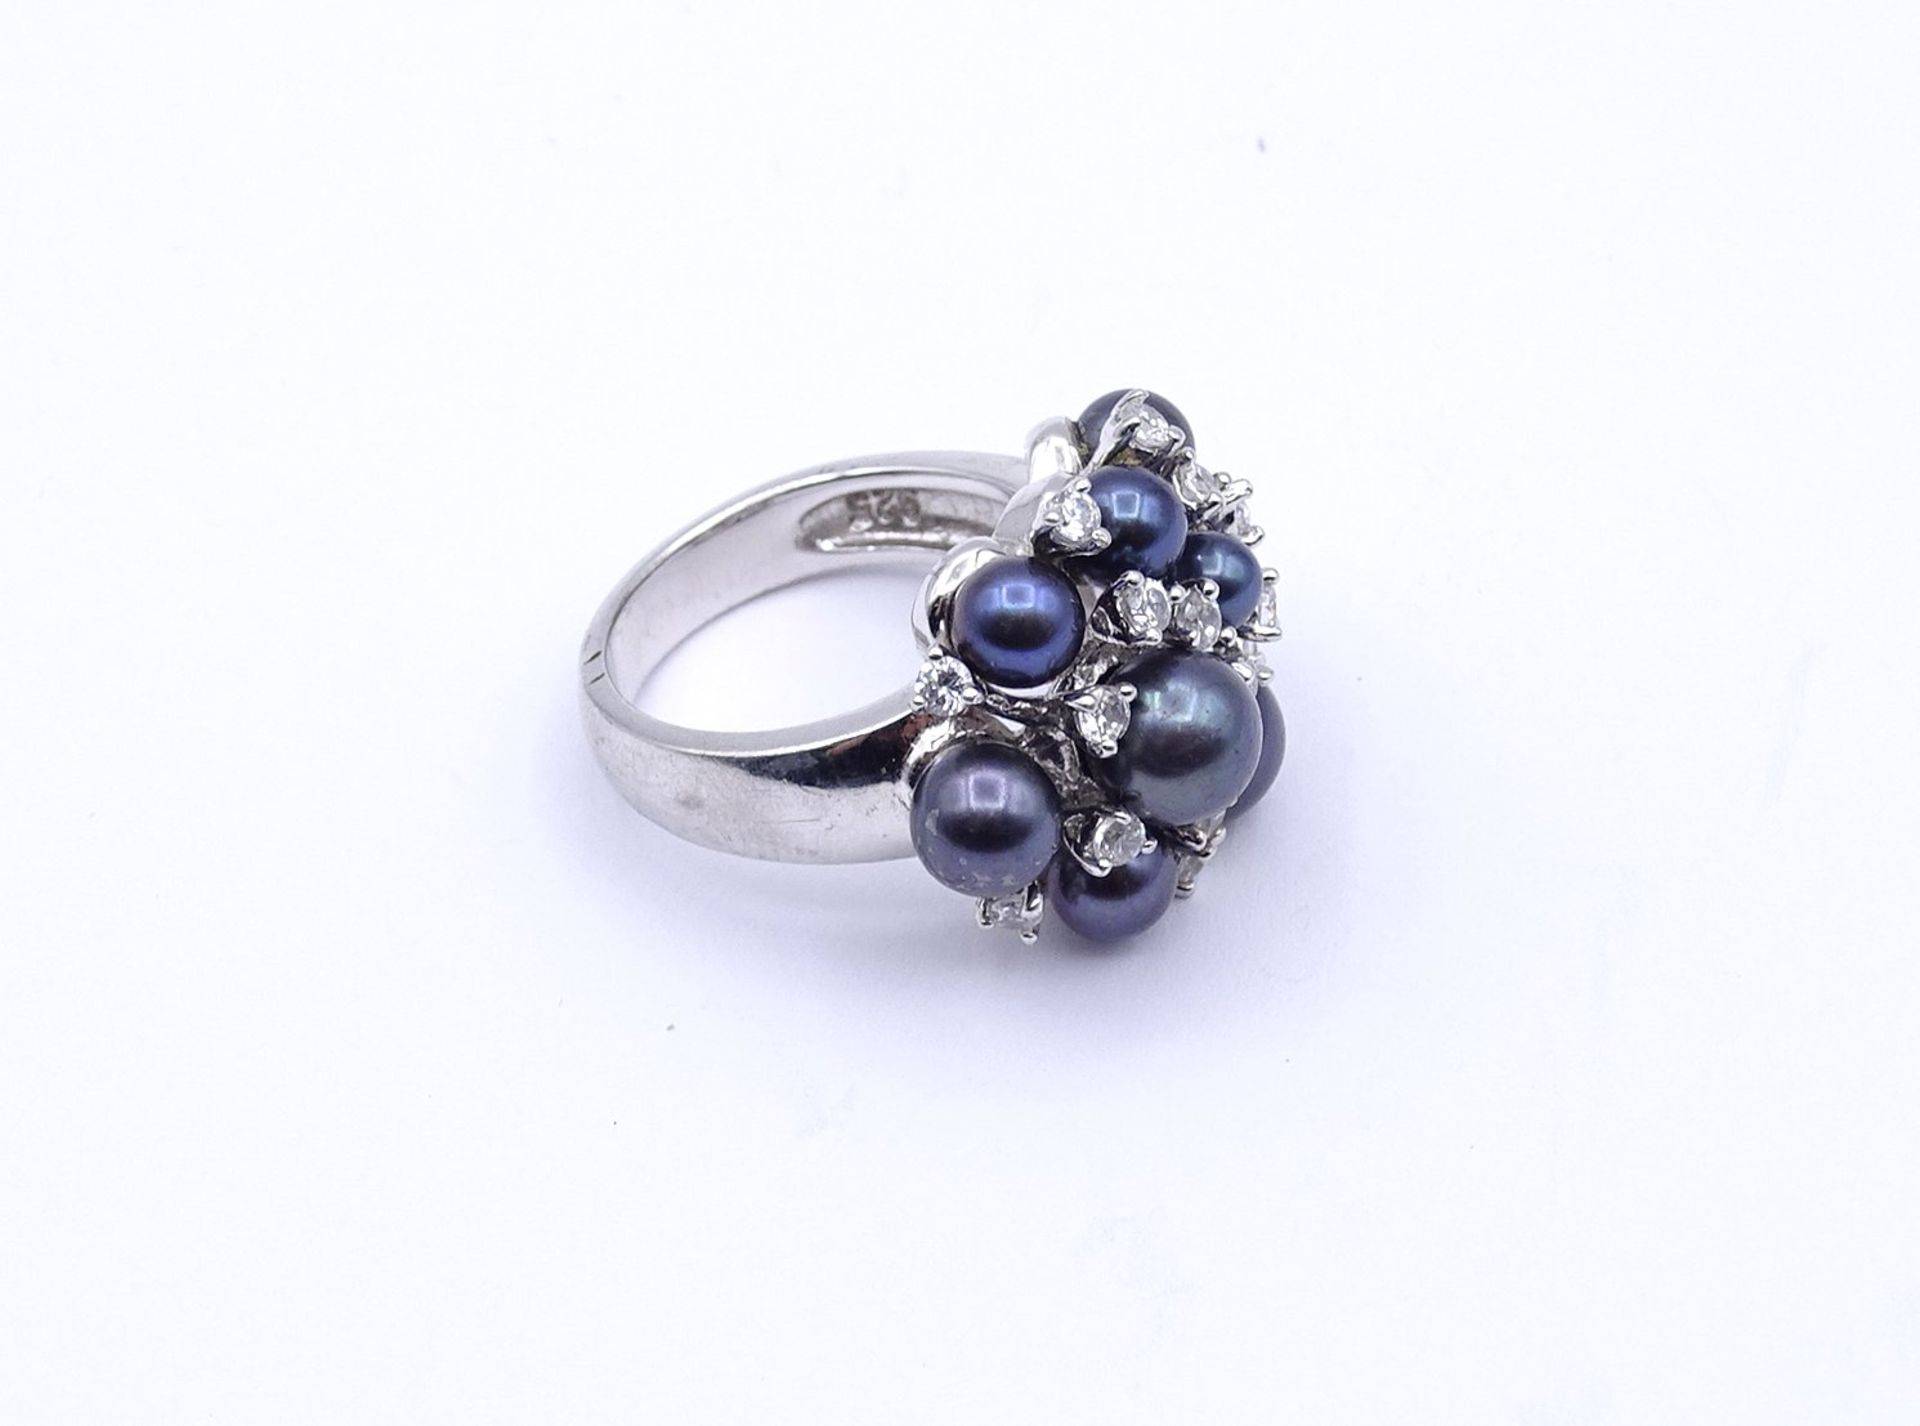 925er Silber Ring mit Perlen und rund facc. klaren Steinen, 7,8g., RG 50 - Bild 3 aus 5